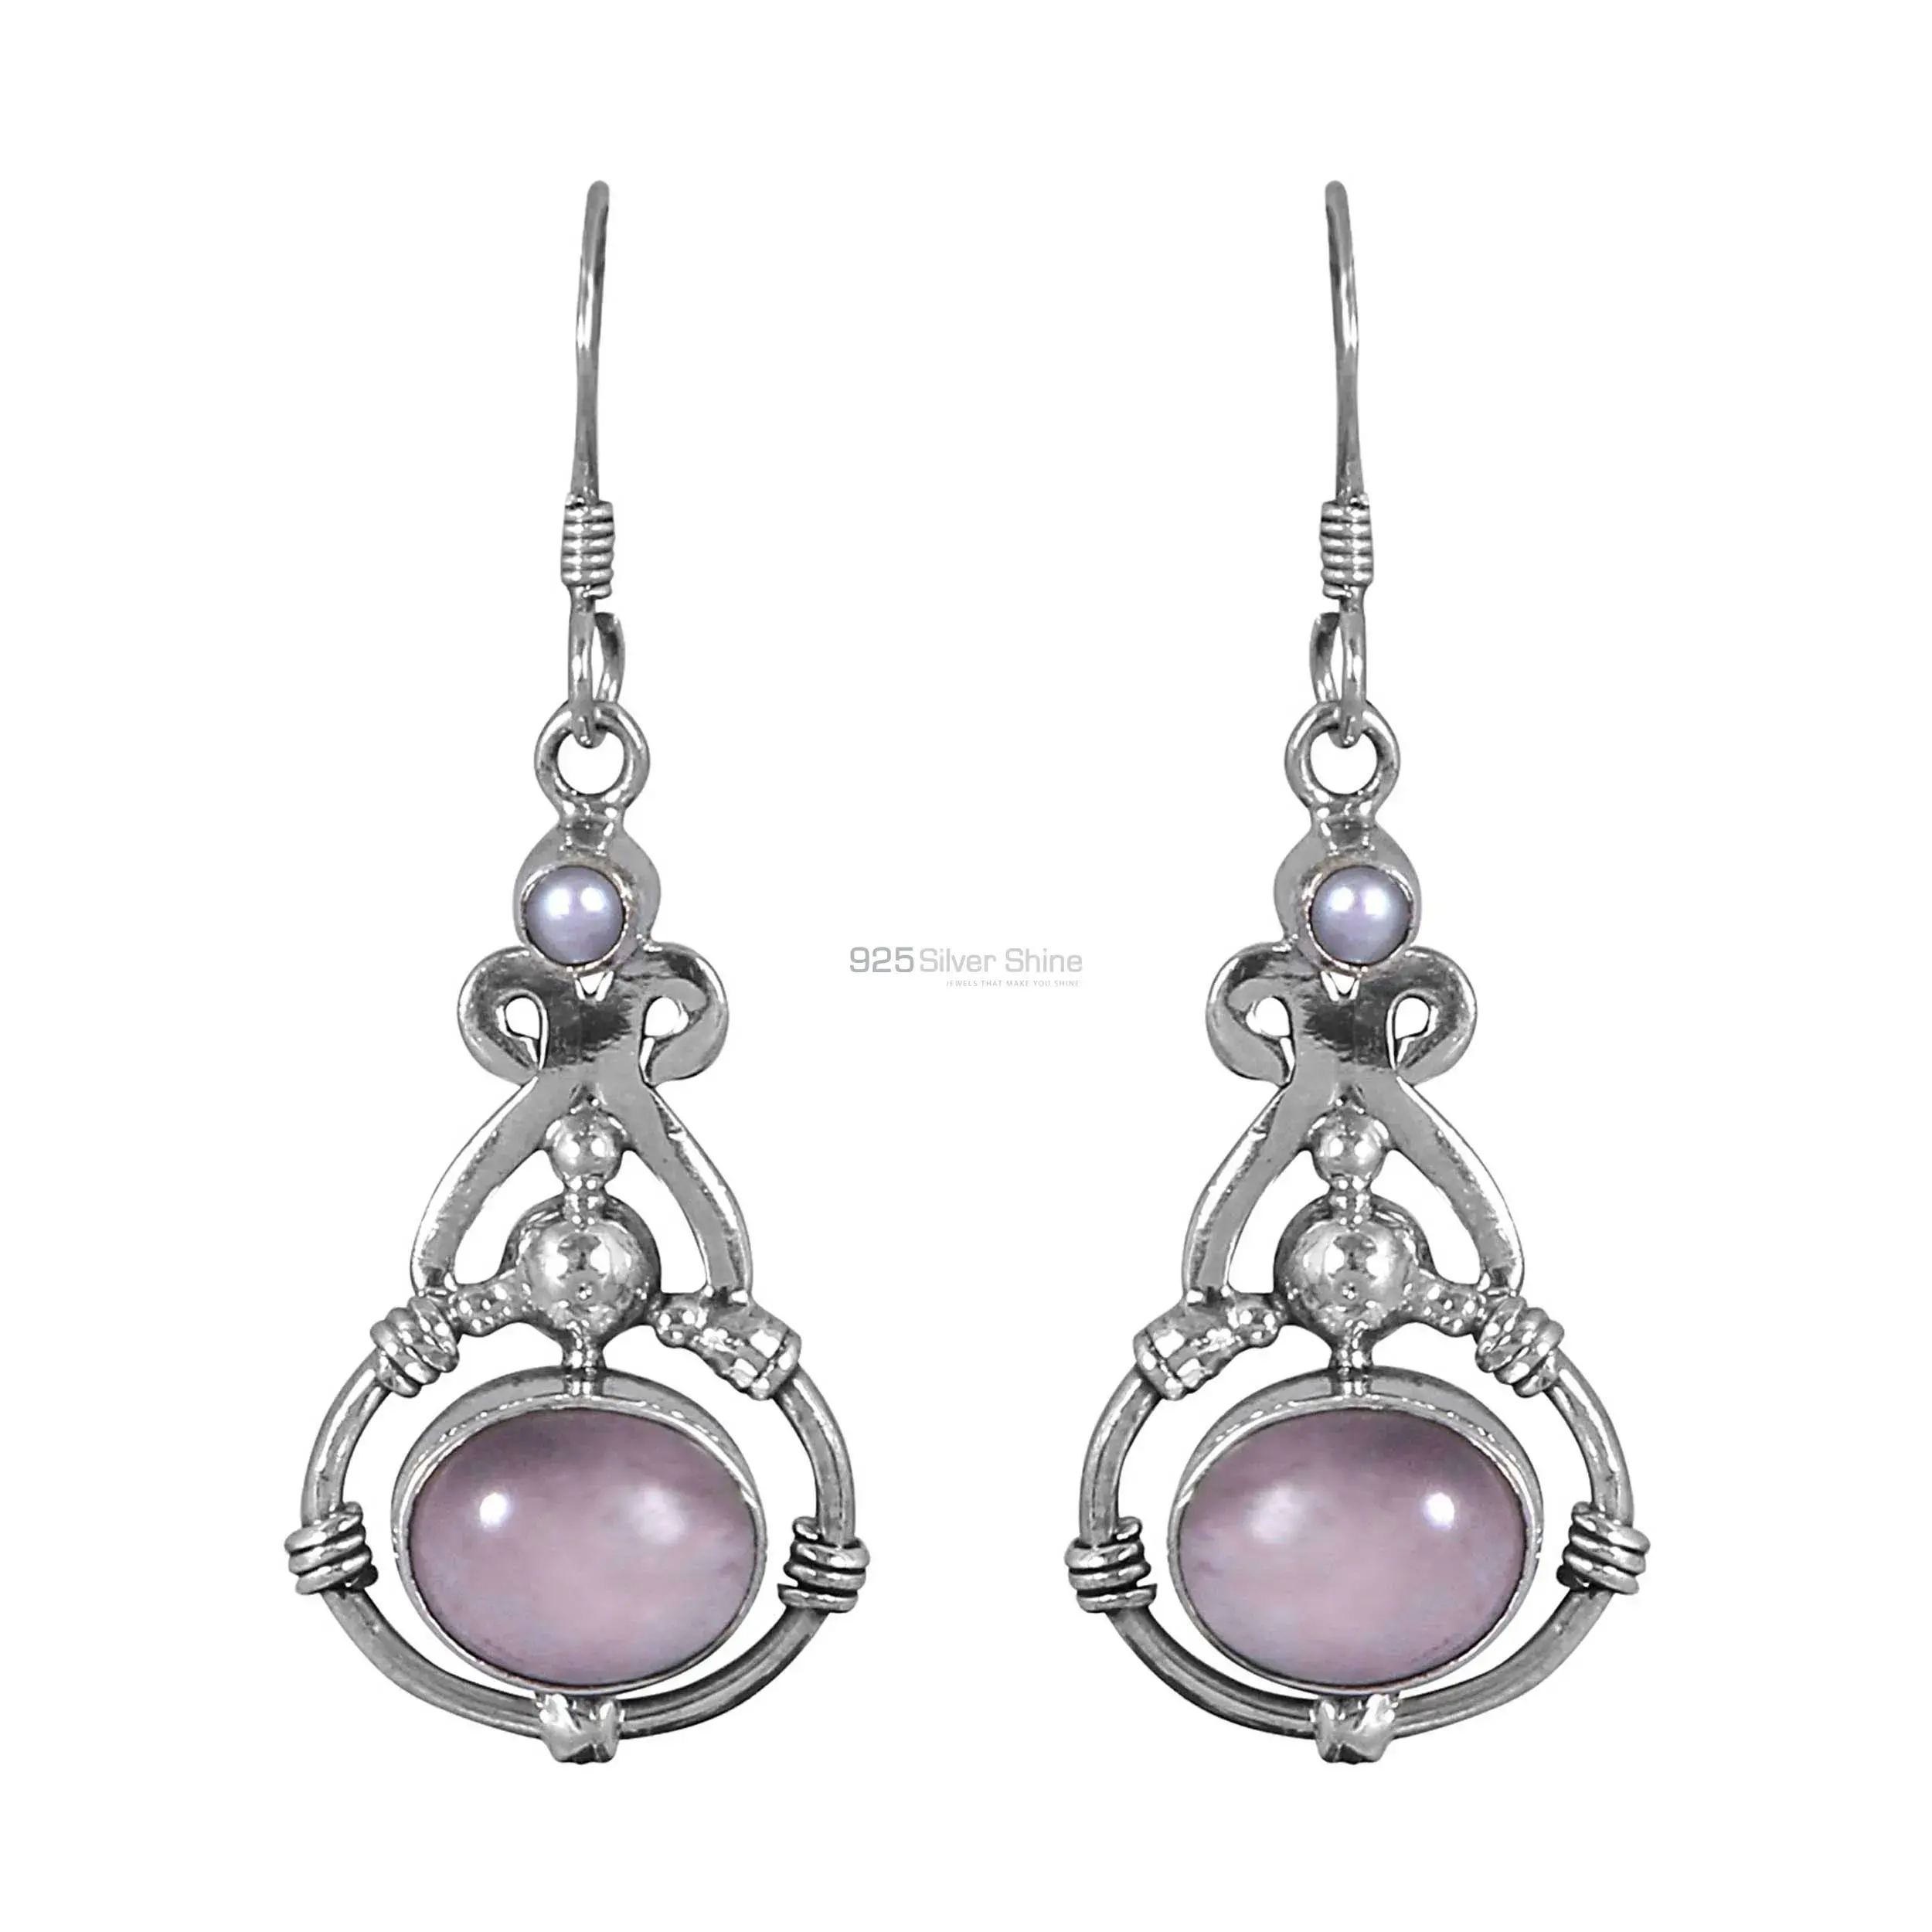 Best Design 925 Sterling Silver Earrings Wholesaler In Multi Gemstone Jewelry 925SE284